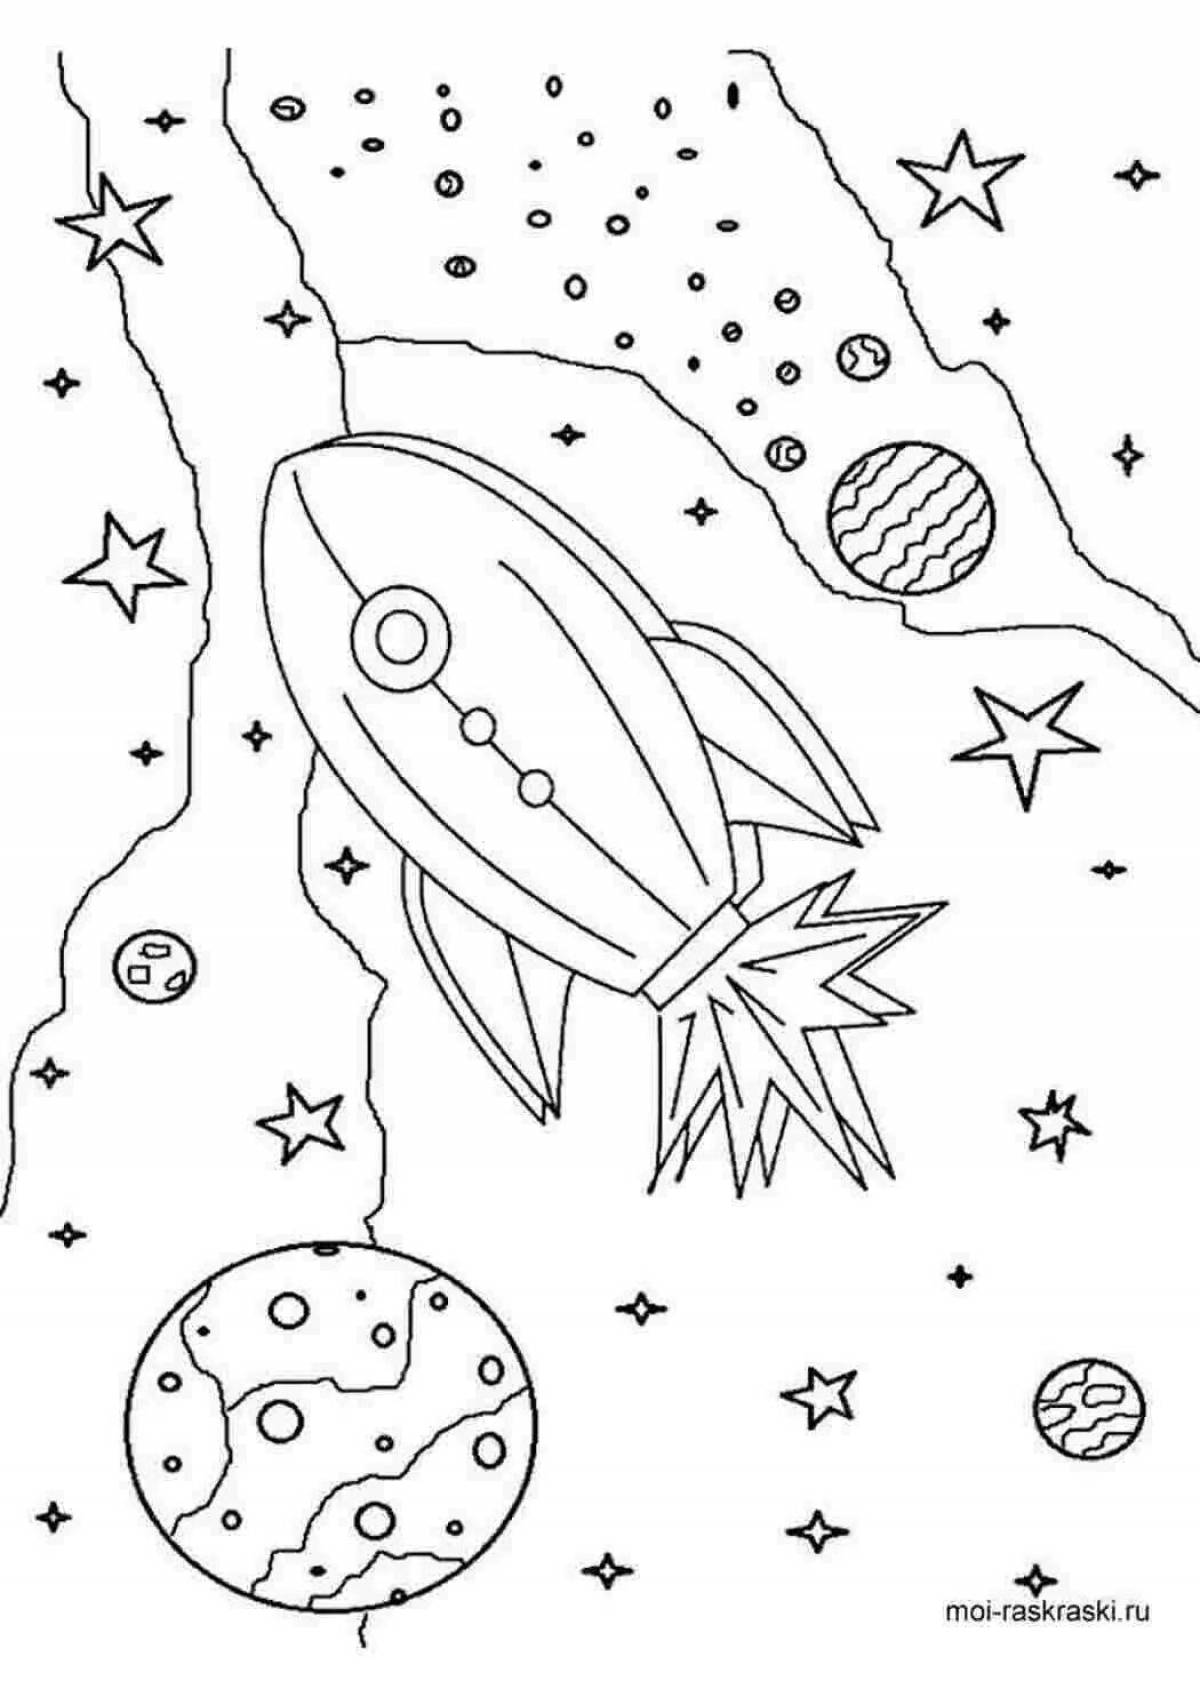 Раскраска космос 5 лет. Раскраска. В космосе. Космос раскраска для детей. Раскраски про космос дет. Космические раскраски для детей.